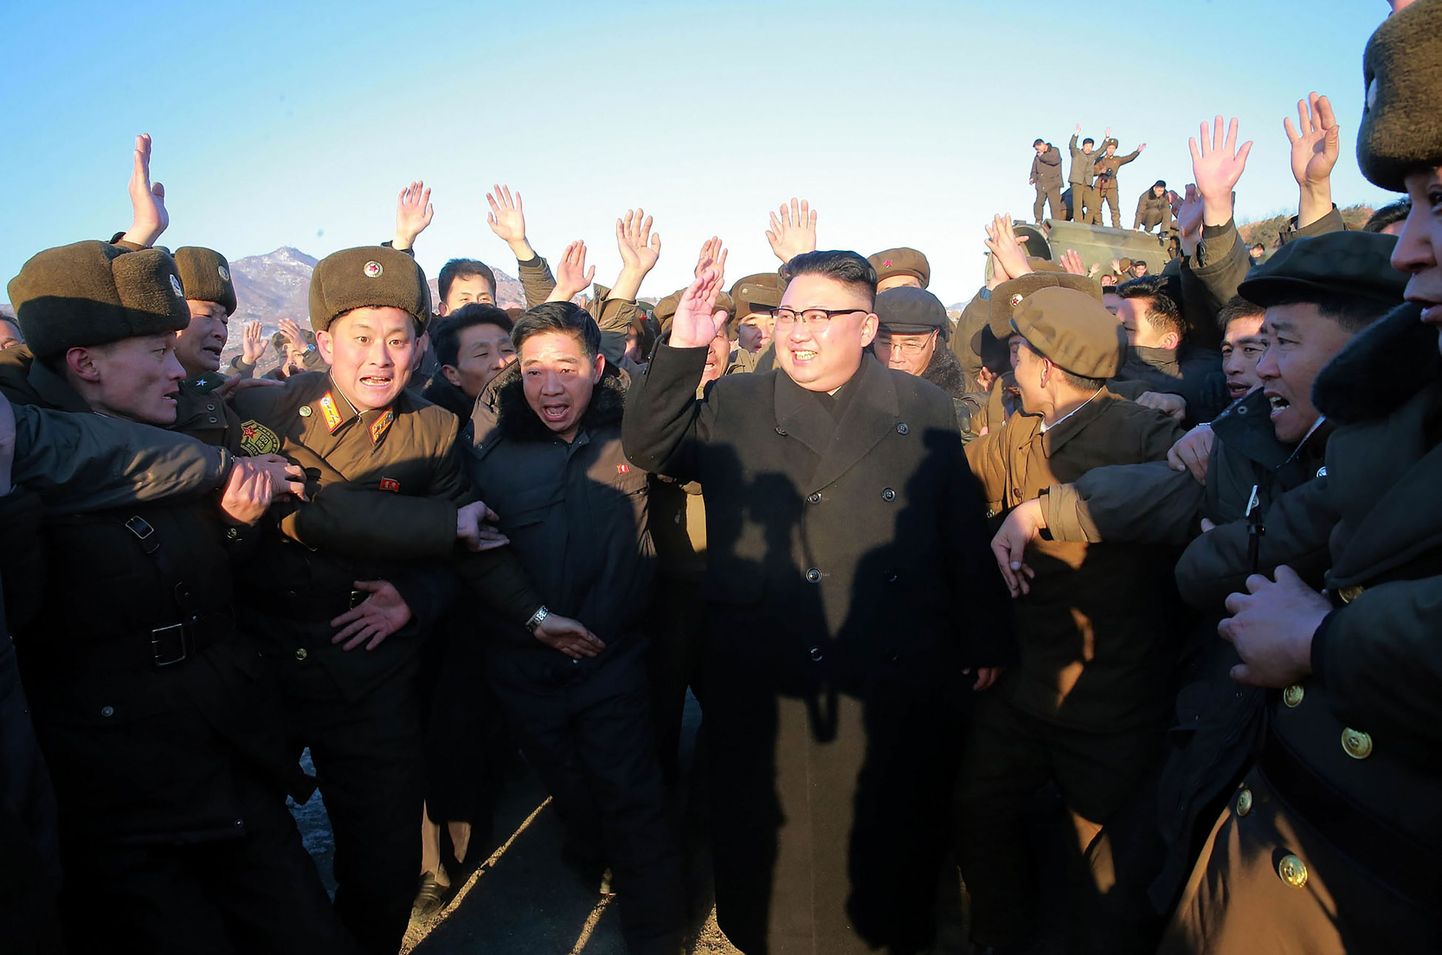 Põhja-Korea liider Kim Jong-un (keskel) raketikatsetuse päeval sõjaväelaste kesksel.